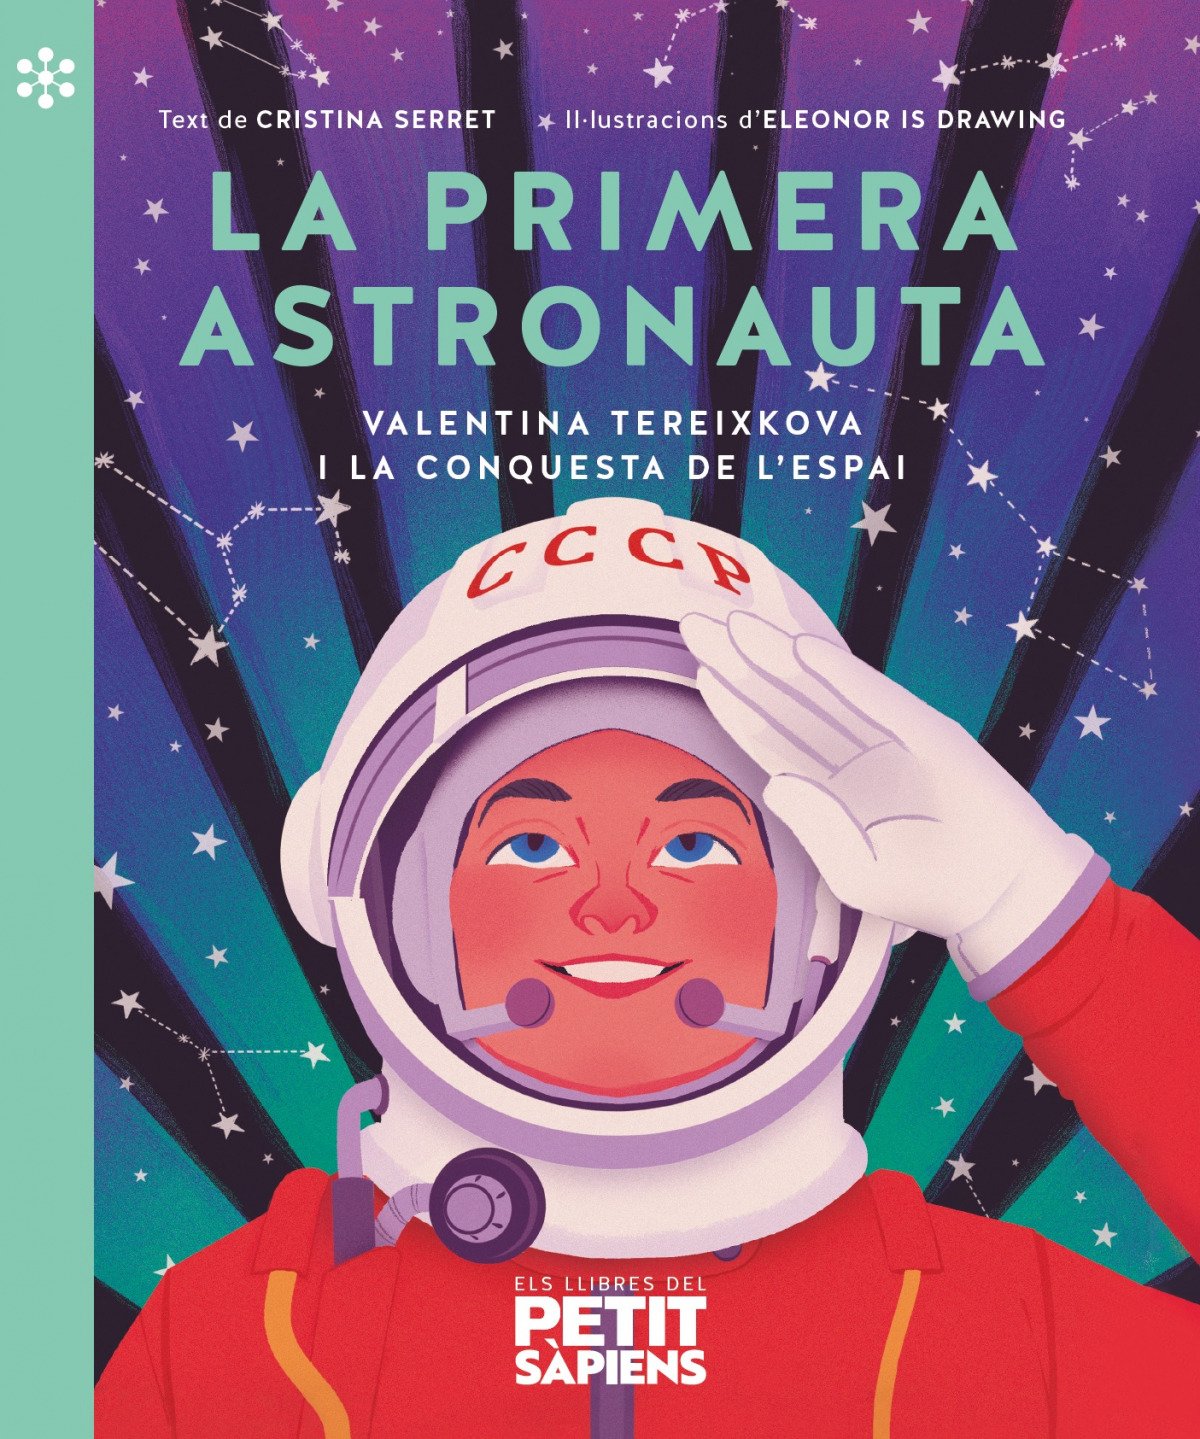 LA PRIMERA ASTRONAUTA. Valentina Tereixkova i la conquesta de l'espai